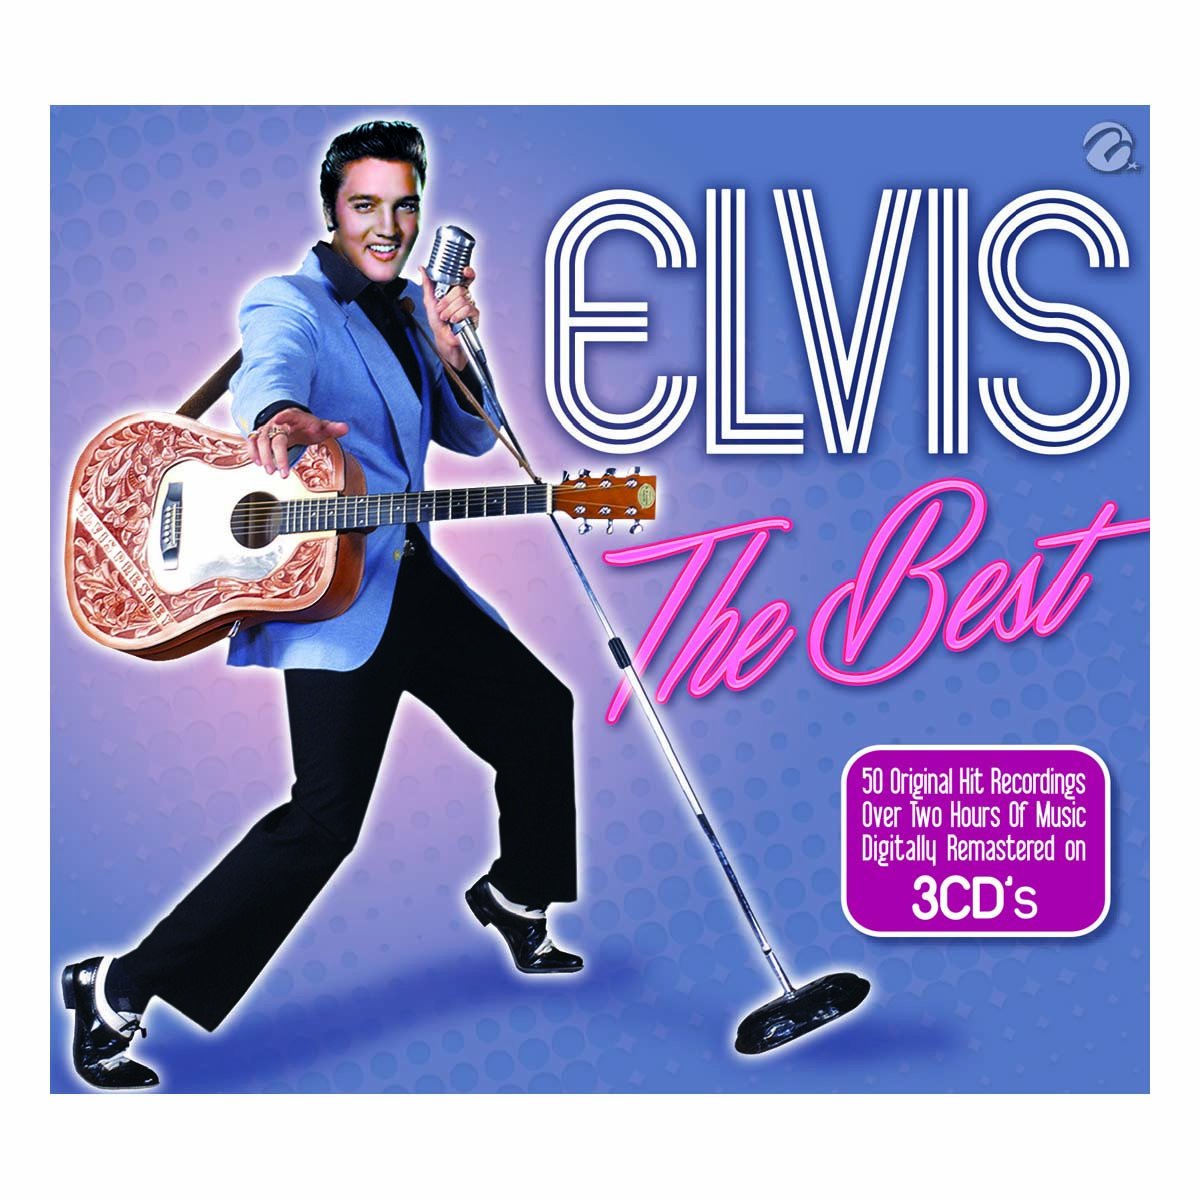 3 Cds The Best Of Elvis Presley